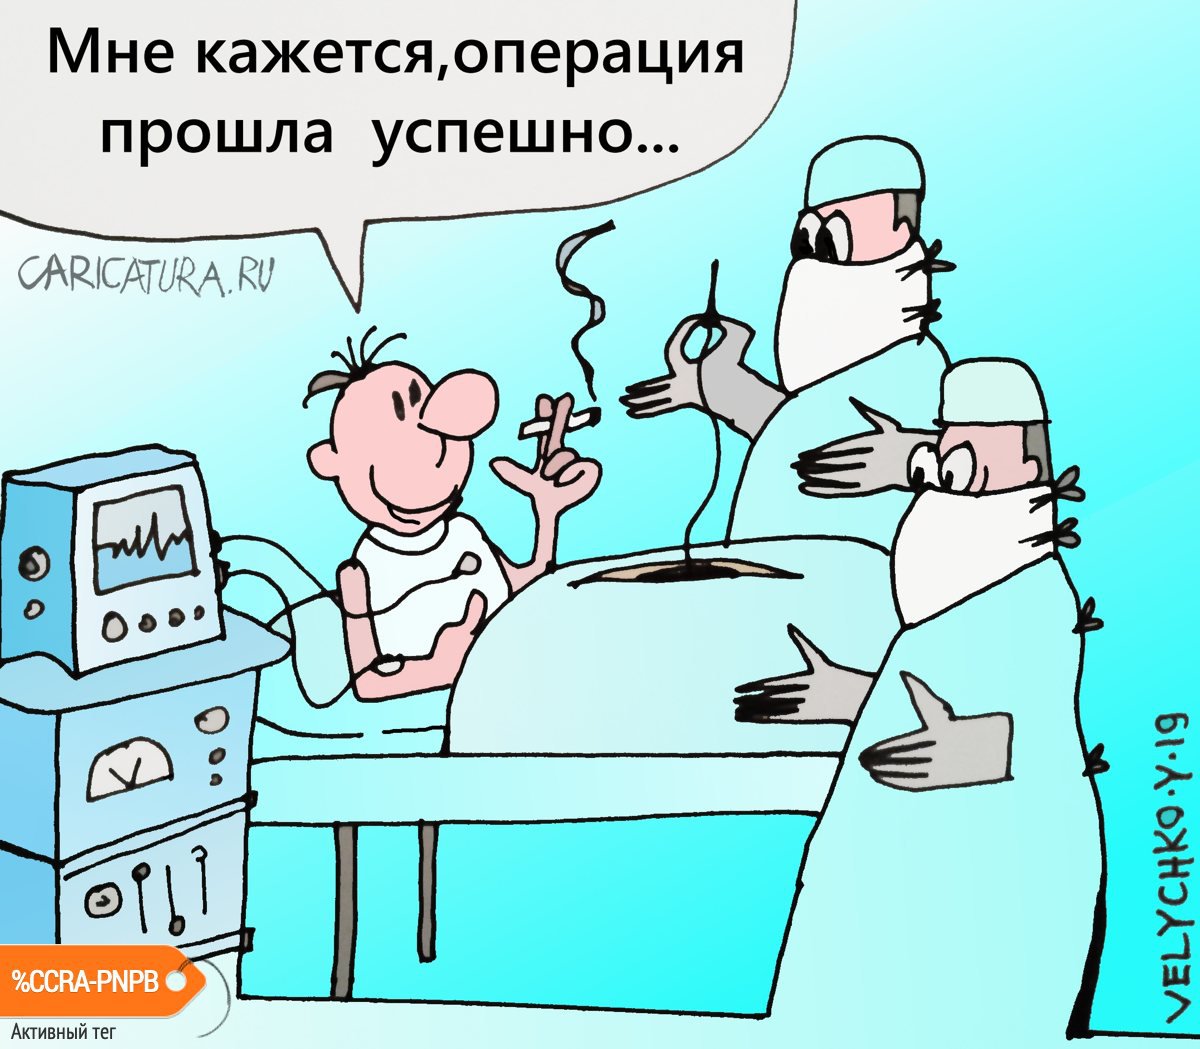 Карикатура "Операция", Юрий Величко